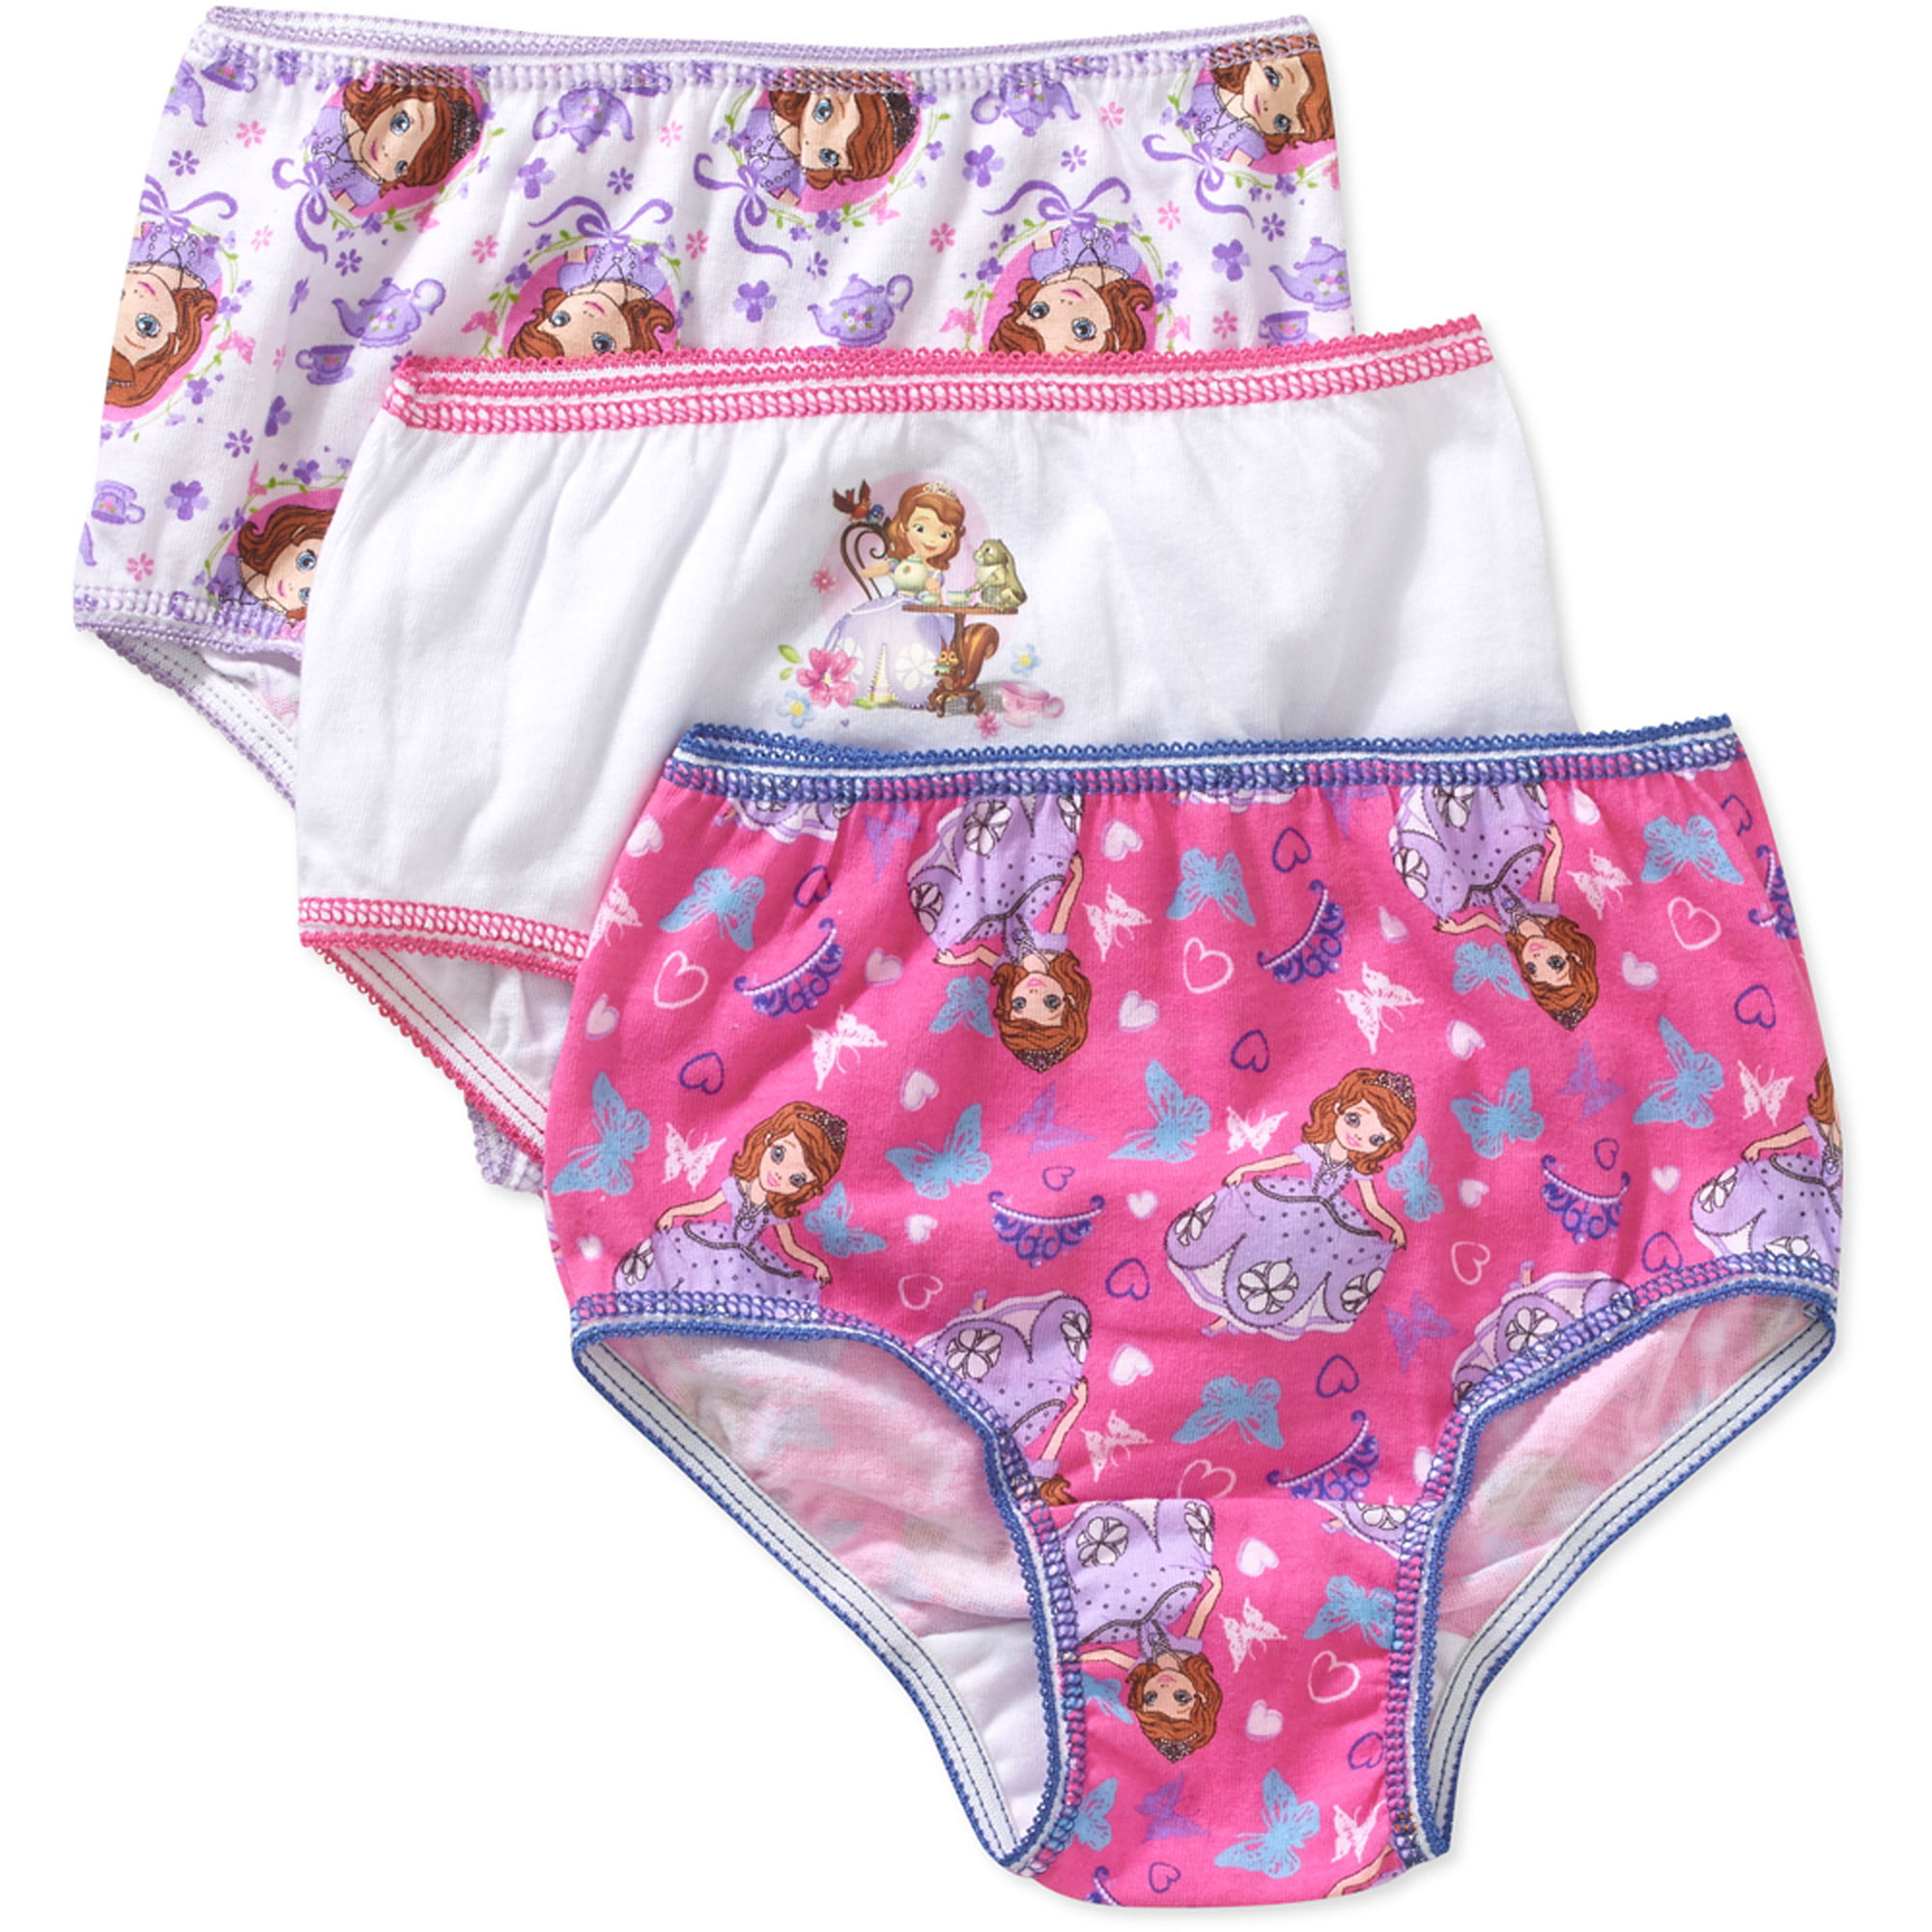 Toddler Girls Underwear, 3 Pack 